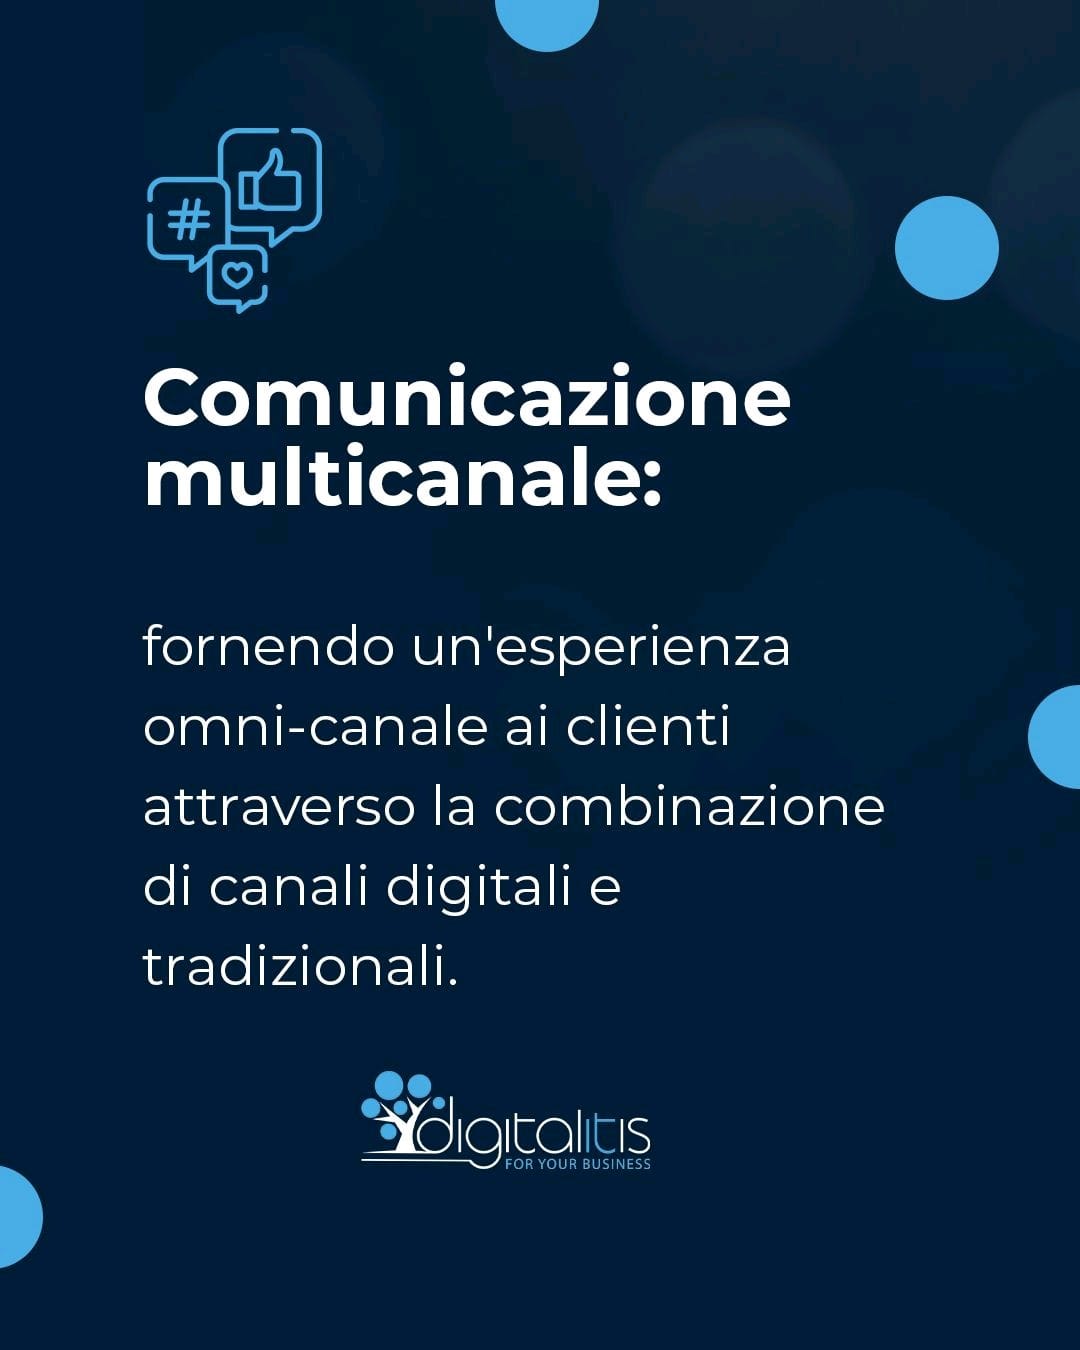 Comunicazione multicanale: fornendo un’esperienza omni-canale ai clienti attraverso la combinazione di canali digitali e tradizionali.